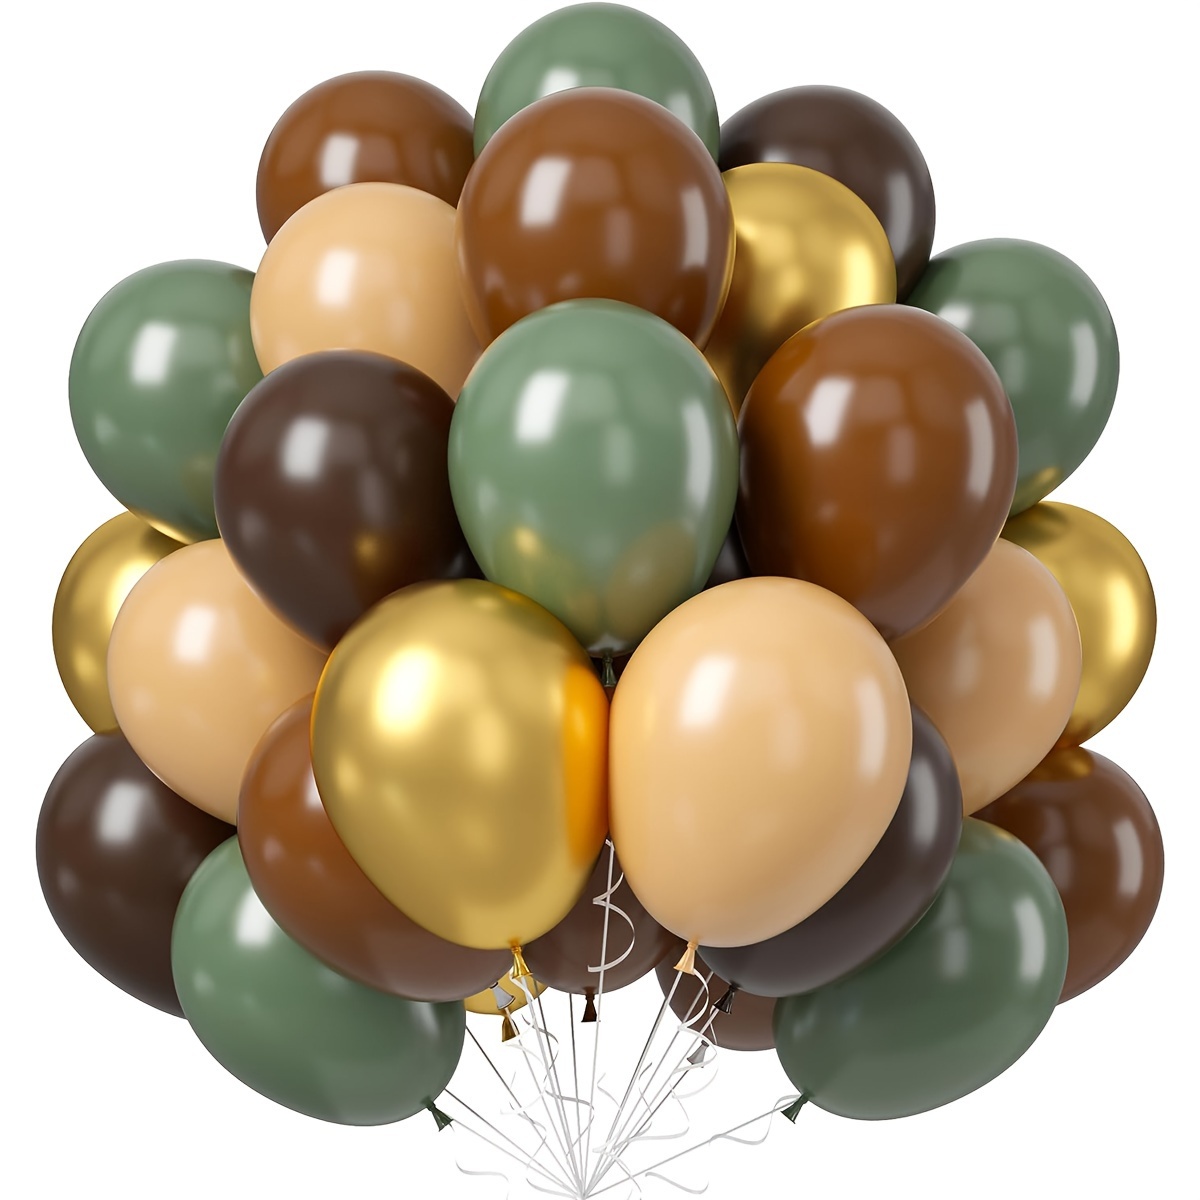 Kit de guirnalda de globos de color verde salvia y marrón, 113 piezas de  arco de globos color verde oliva y marrón nude y globo dorado metálico